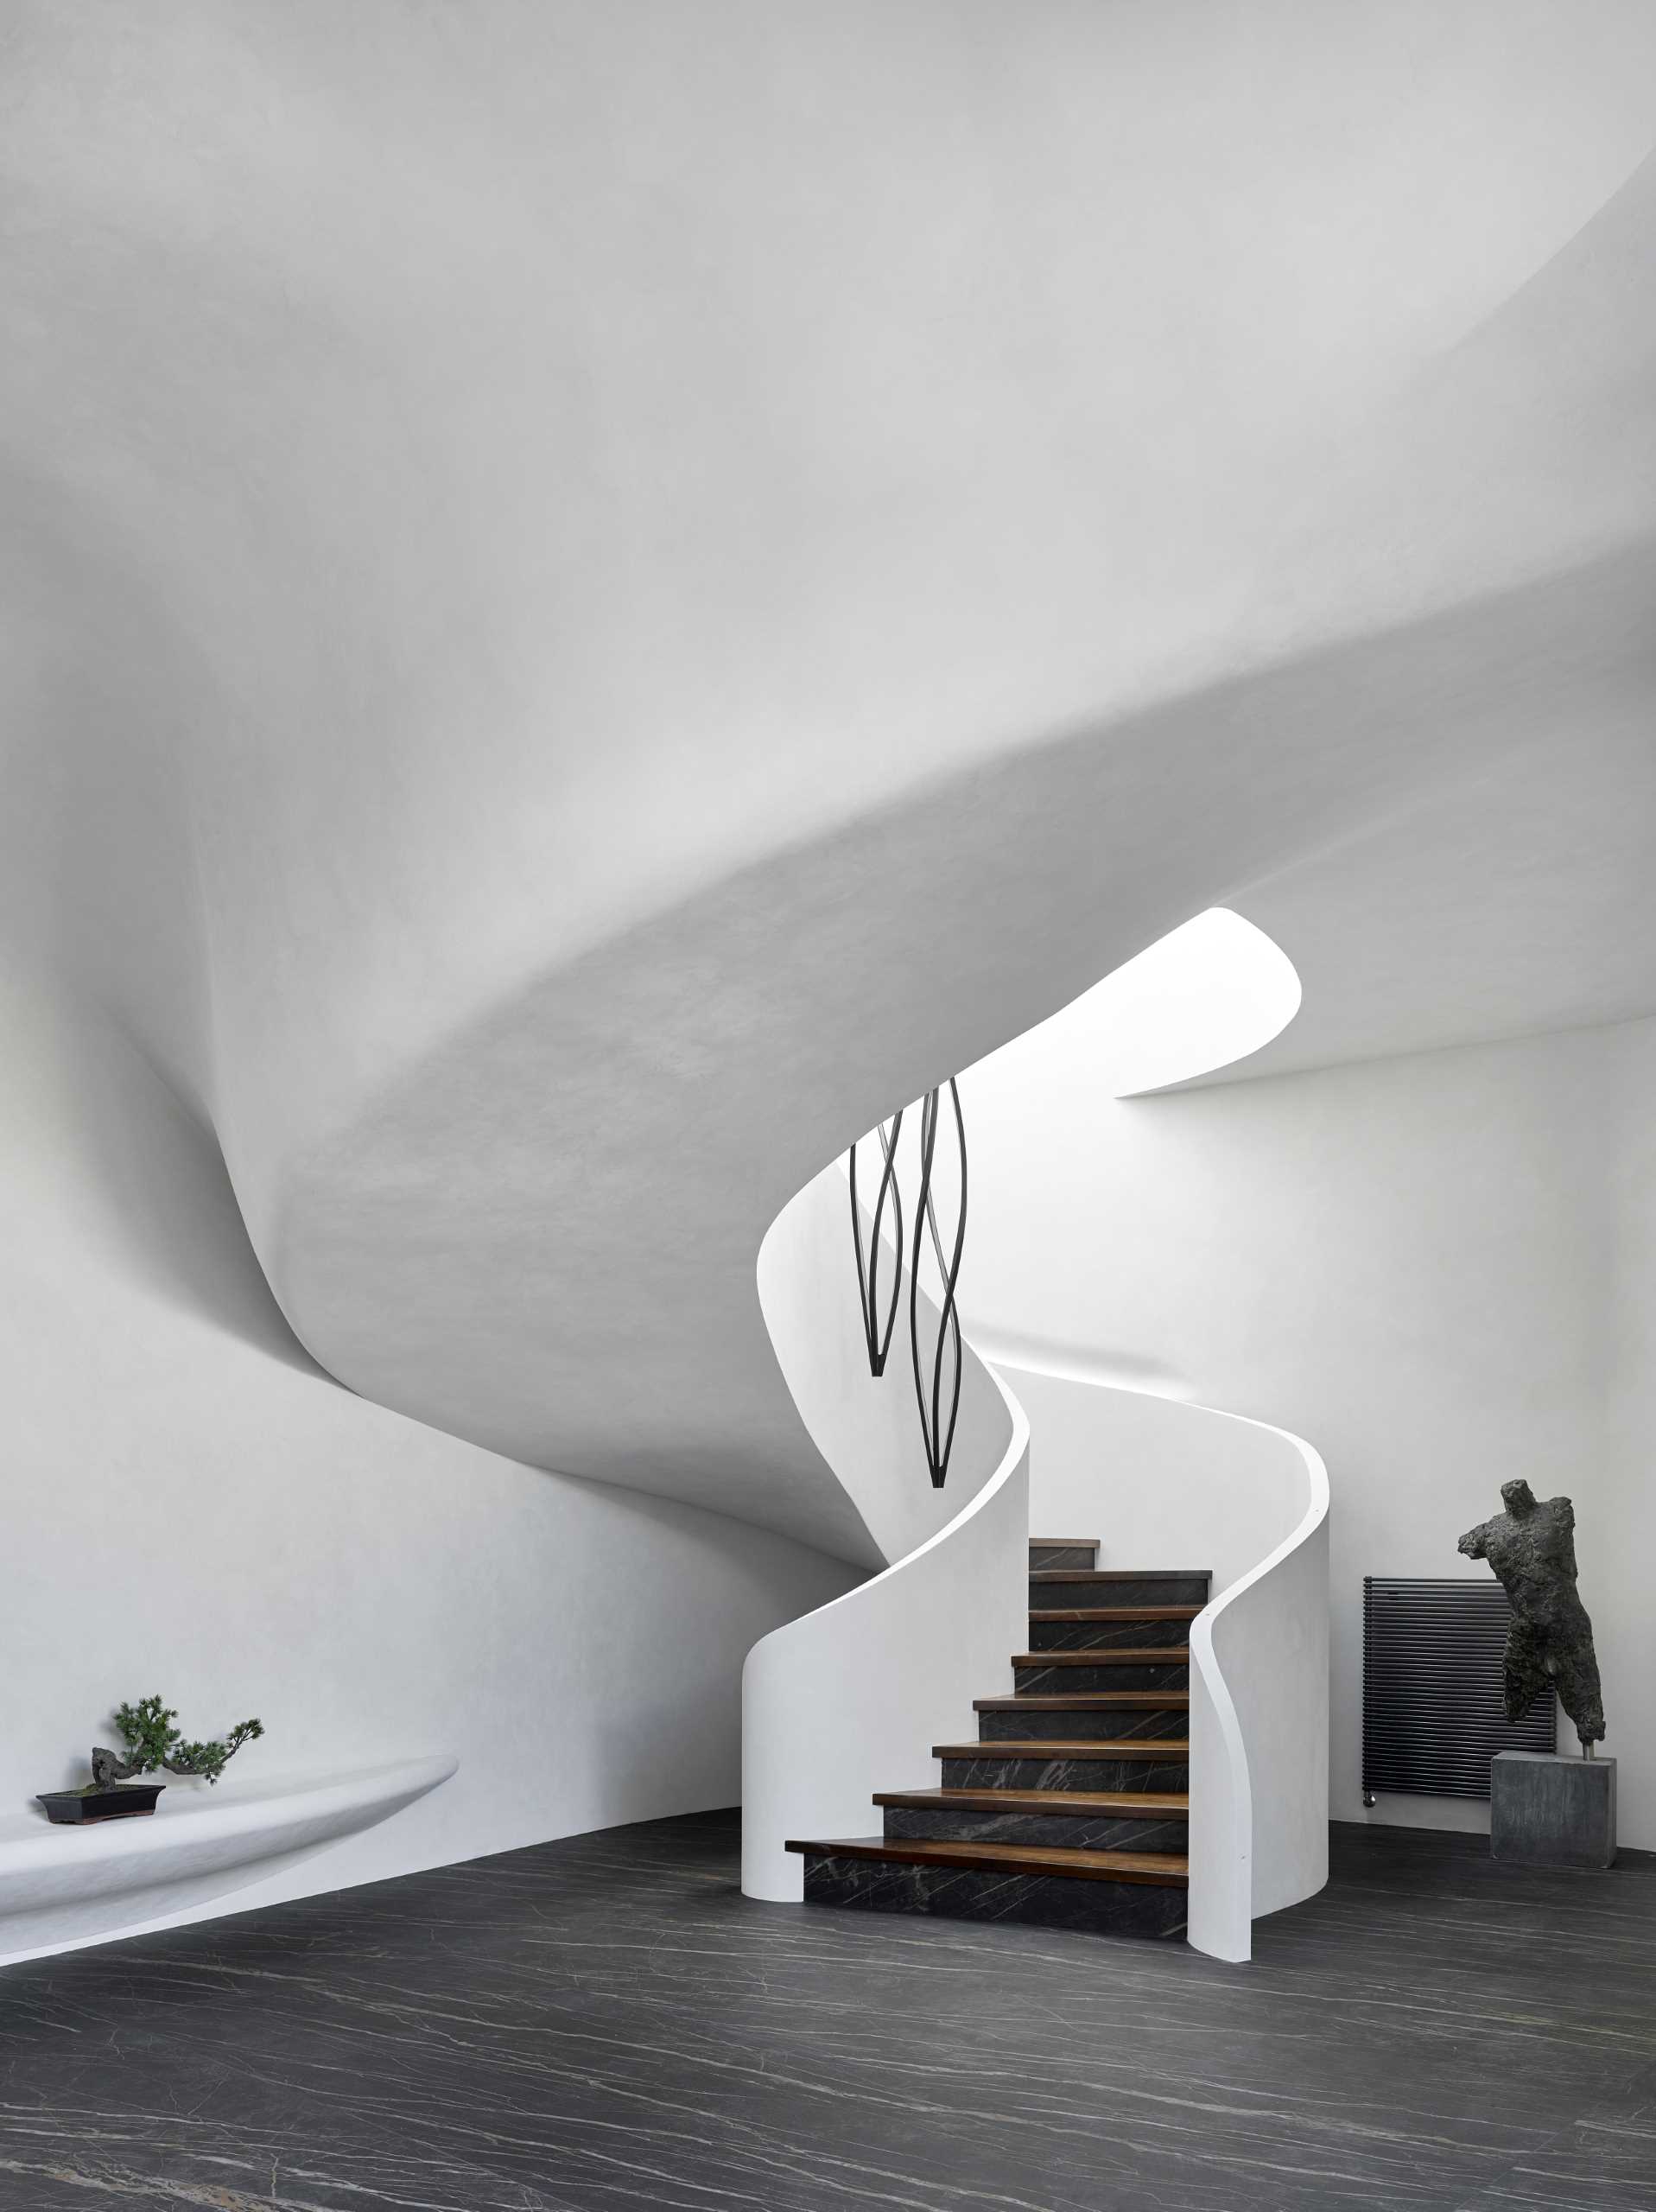 Винтовая лестница, встроенная в дизайн этого современного дома, добавляет интерьеру скульптурный элемент, а стены контрастируют с темным полом.